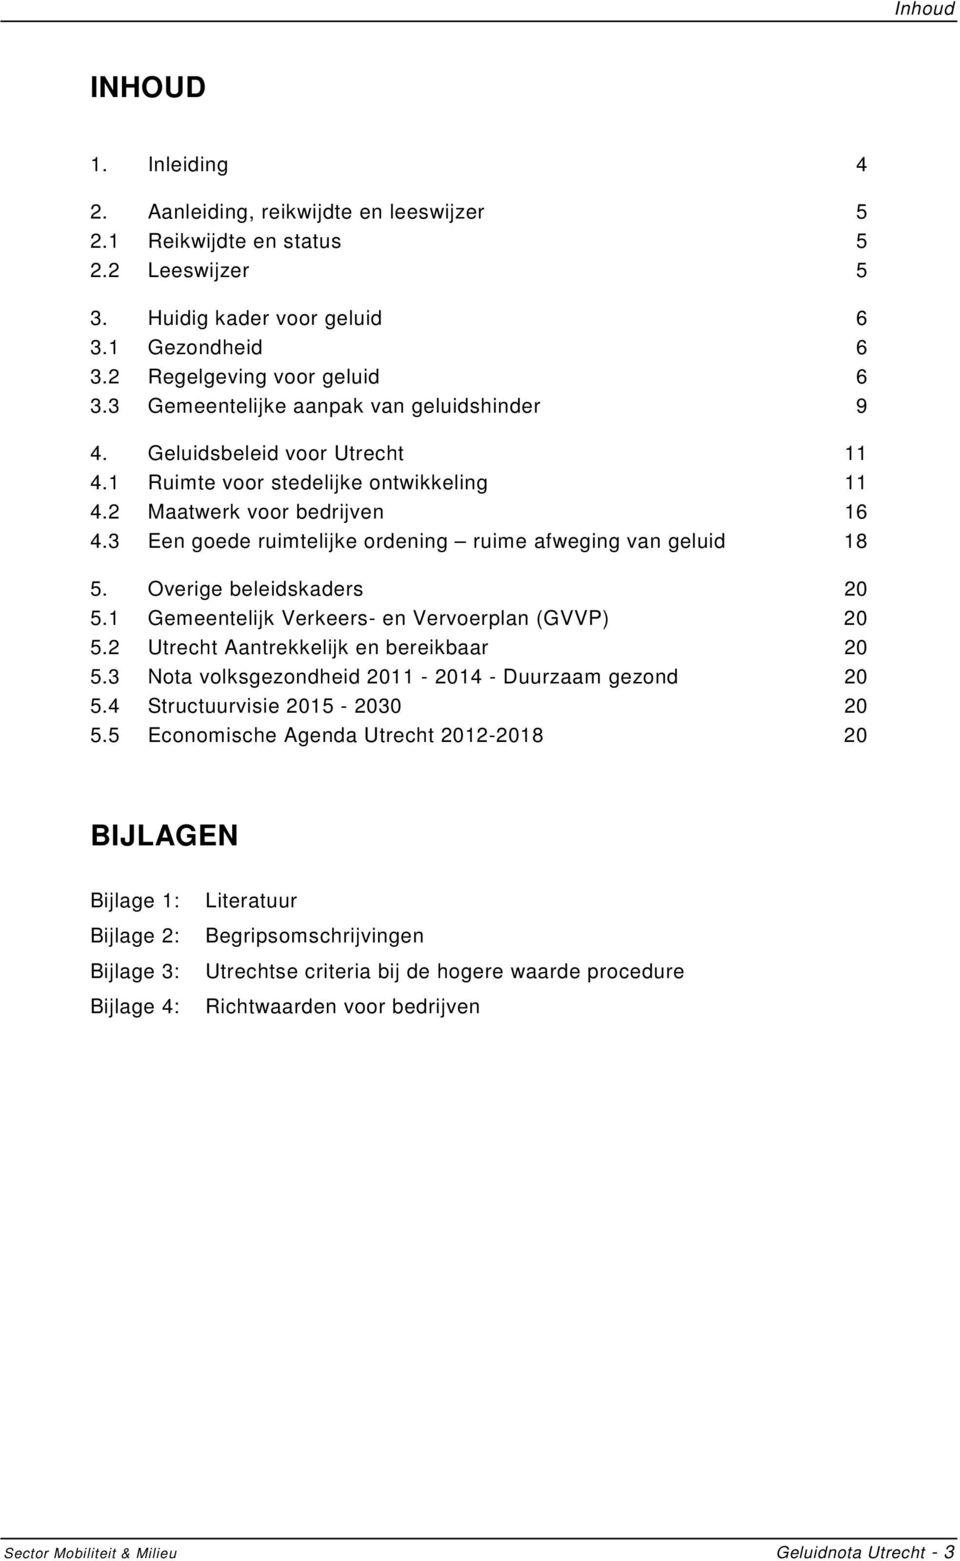 3 Een goede ruimtelijke ordening ruime afweging van geluid 18 5. Overige beleidskaders 20 5.1 Gemeentelijk Verkeers- en Vervoerplan (GVVP) 20 5.2 Utrecht Aantrekkelijk en bereikbaar 20 5.